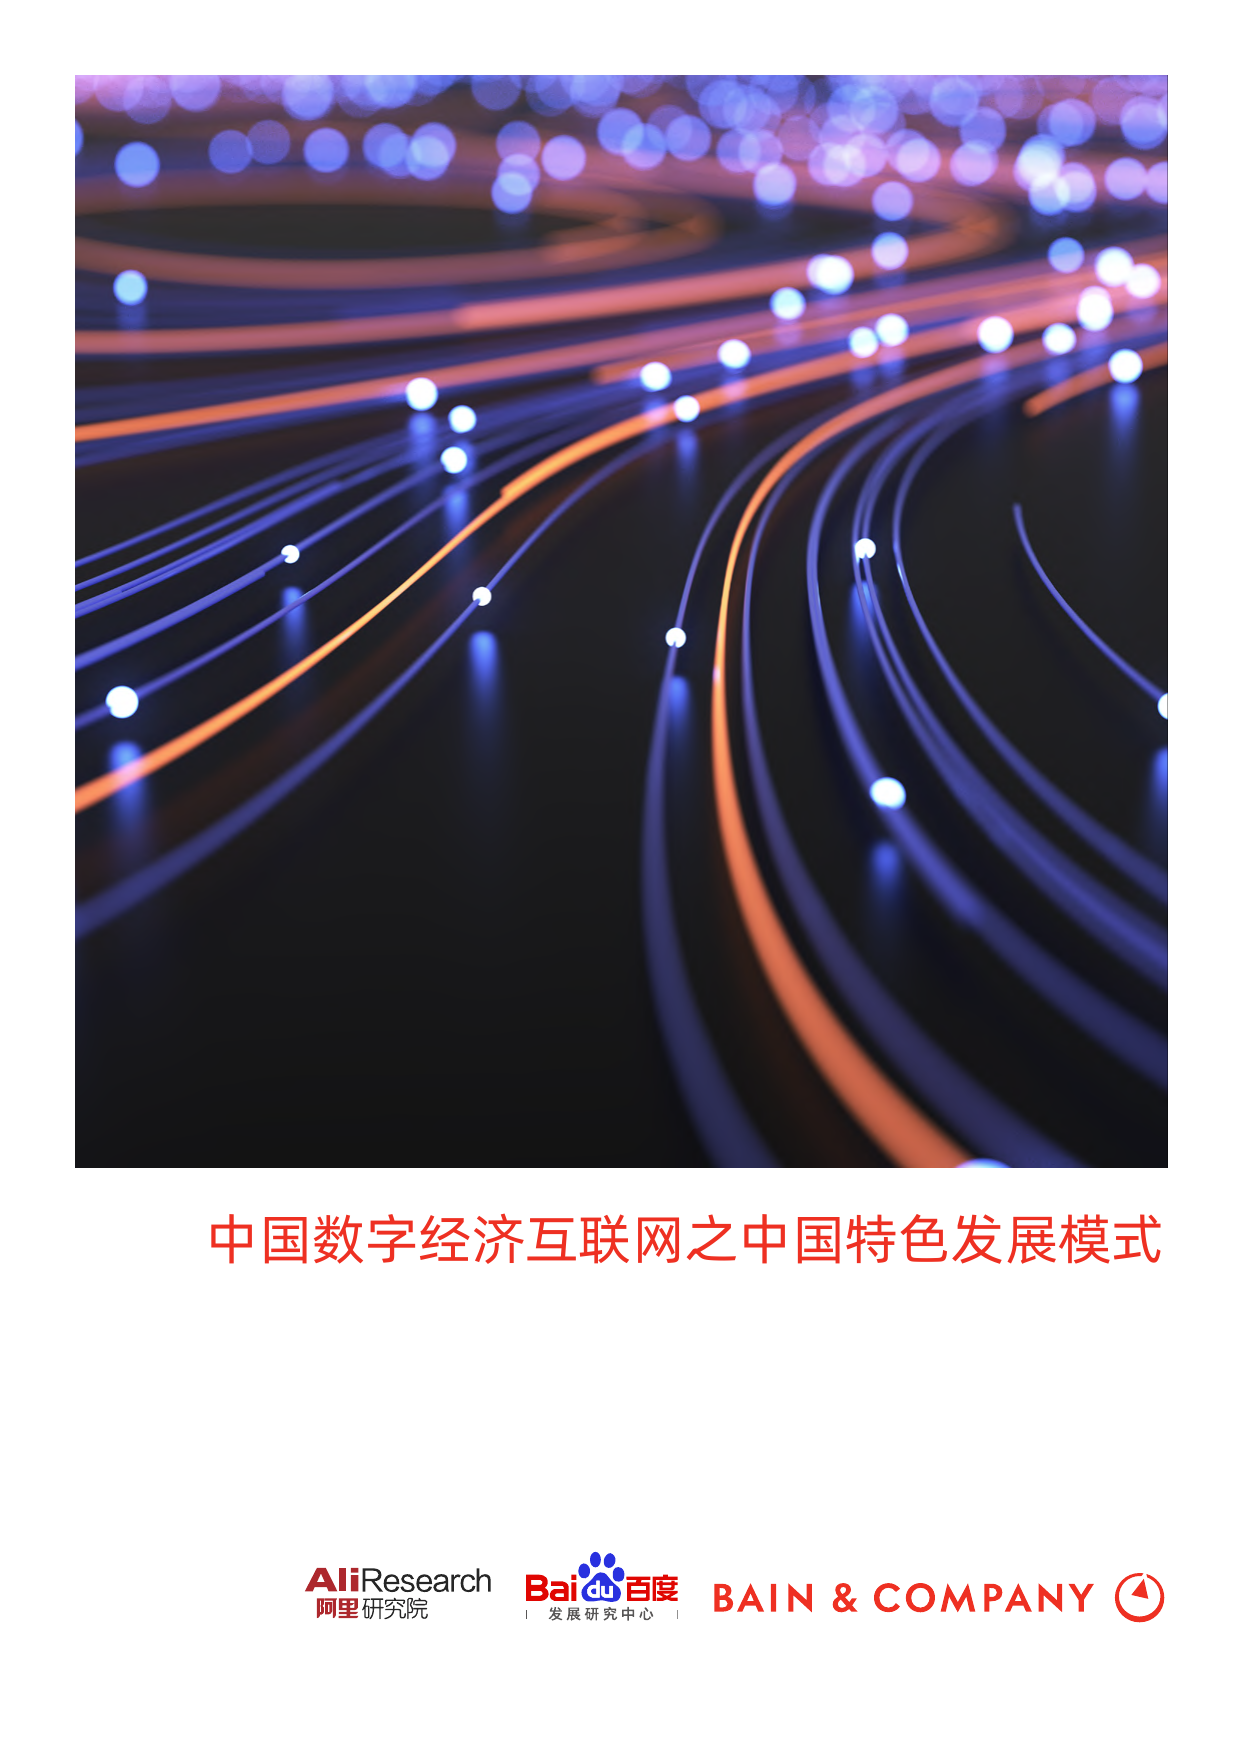 数字经济互联网之中国数字化发展模式（中英双语版）-阿里&百度&贝恩-2021-61页